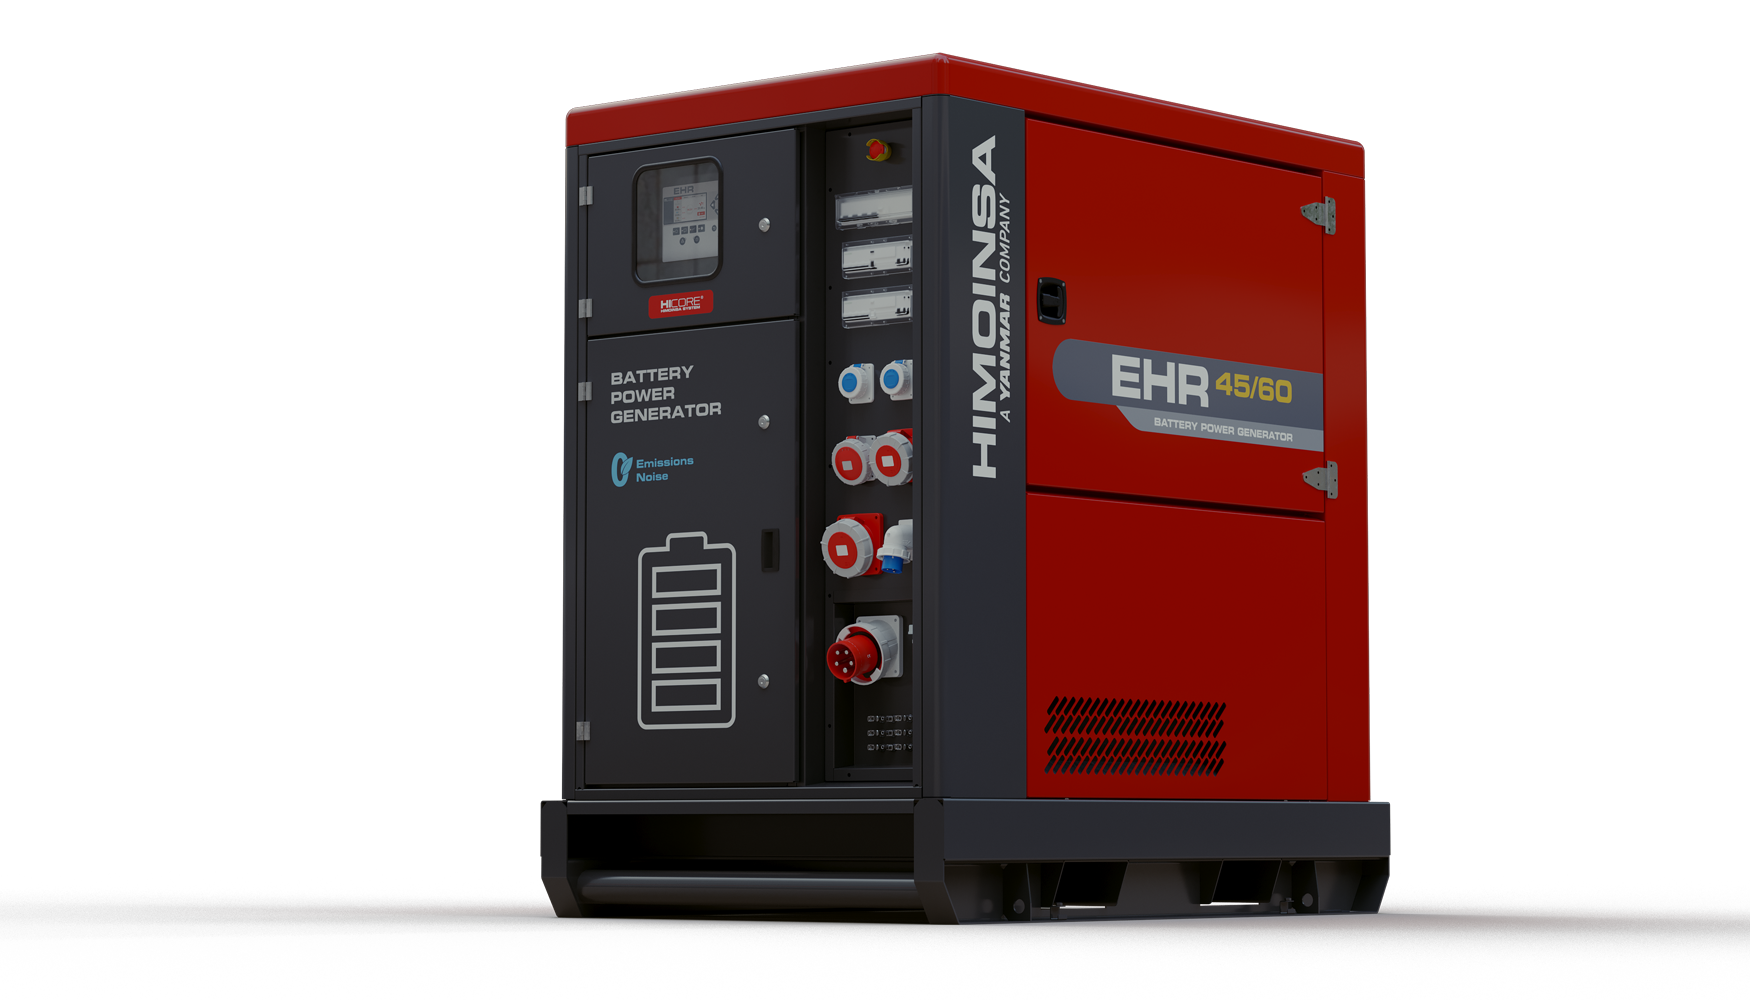 El EHR | Battery Power Generator es un nuevo sistema de almacenamiento y distribucin de energa desarrollado por Himoinsa...